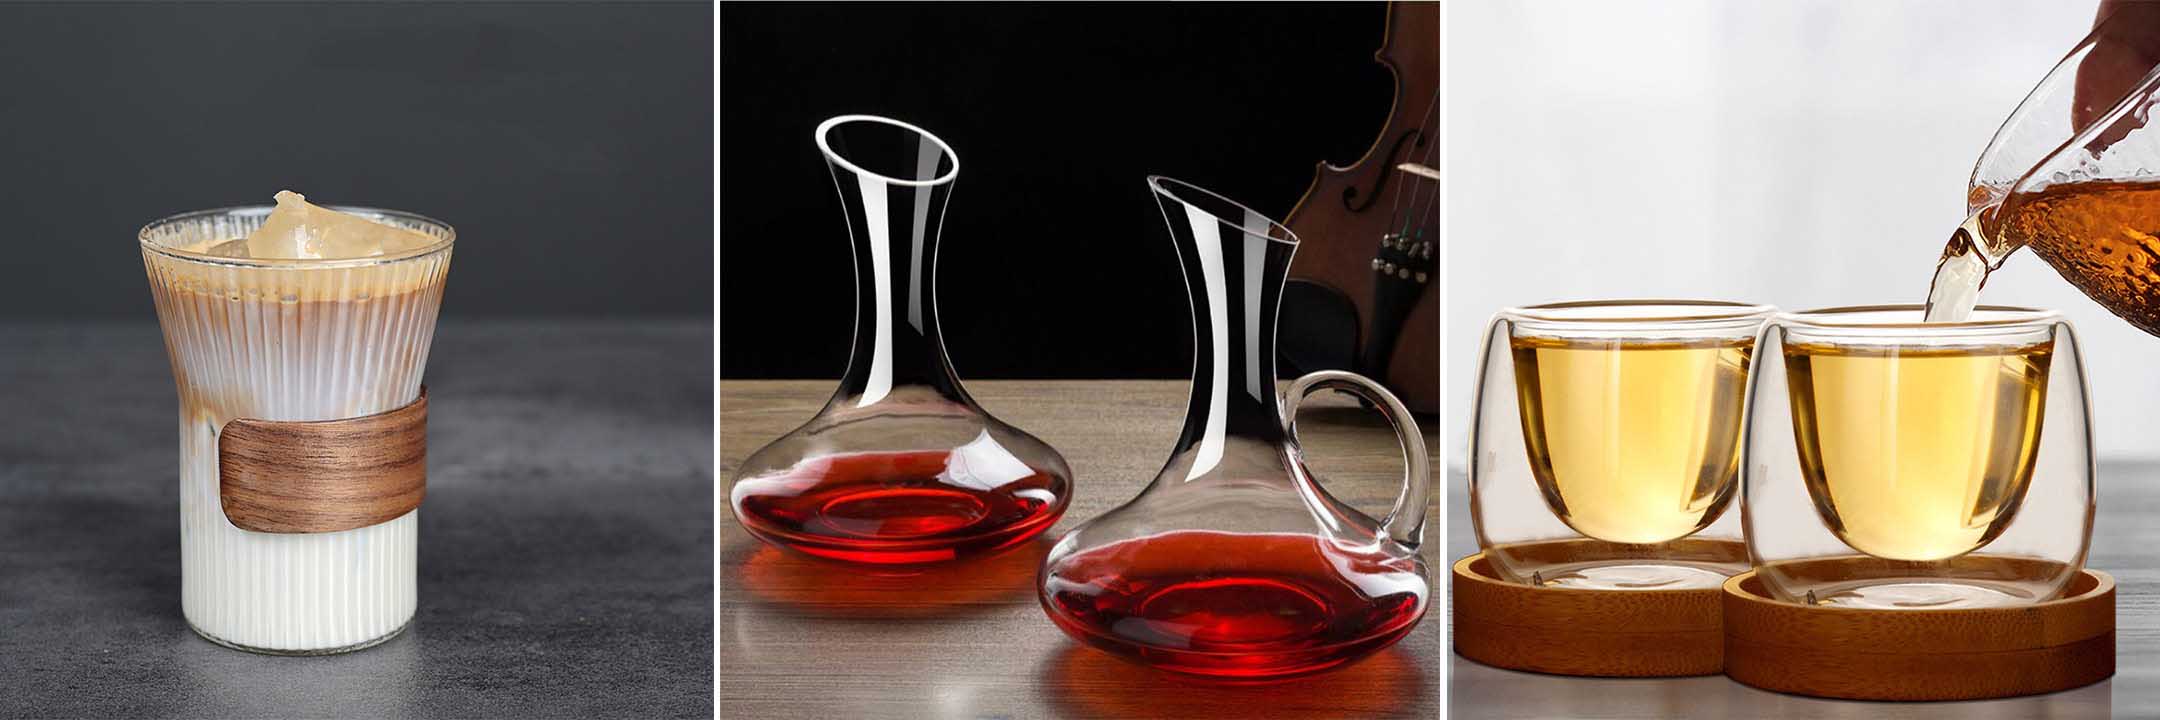 Designed handmade glassware for any drinks